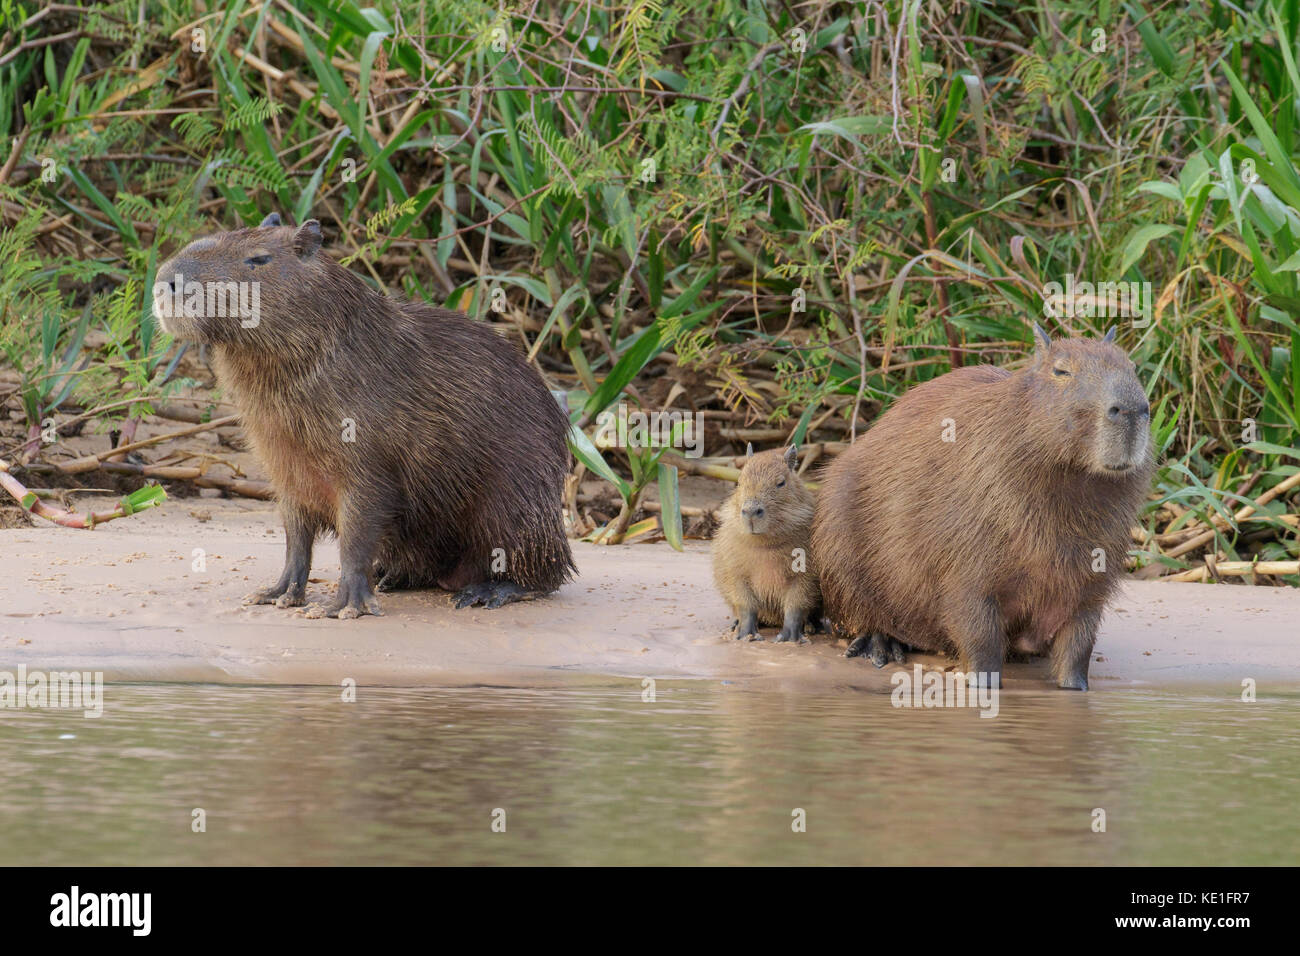 Capybara près d'une rivière dans la région de Pantanal au Brésil Banque D'Images